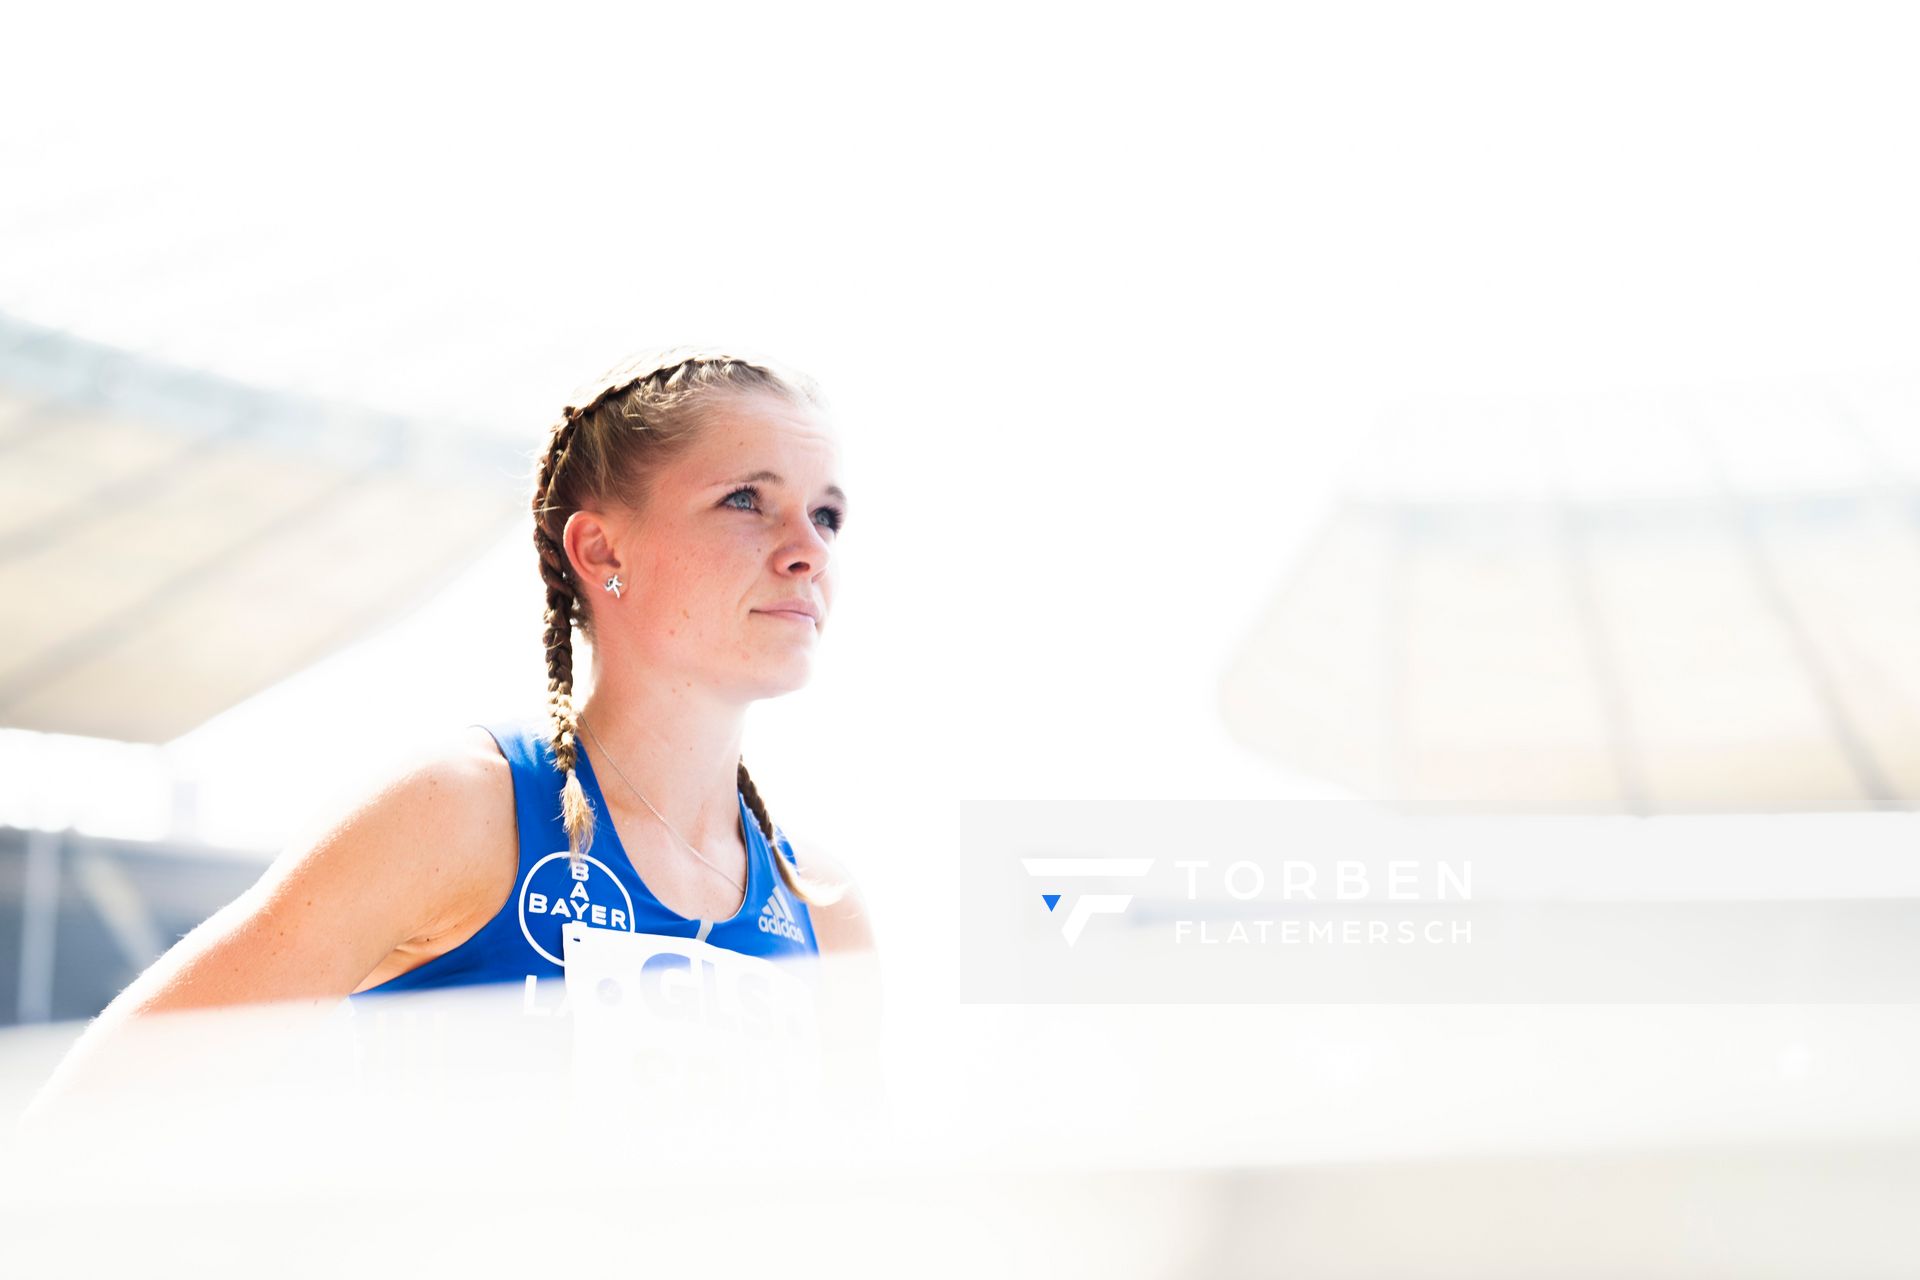 Tanja Spill (LAV Bayer Uerdingen/Dormagen) im 800m Finale waehrend der deutschen Leichtathletik-Meisterschaften im Olympiastadion am 26.06.2022 in Berlin